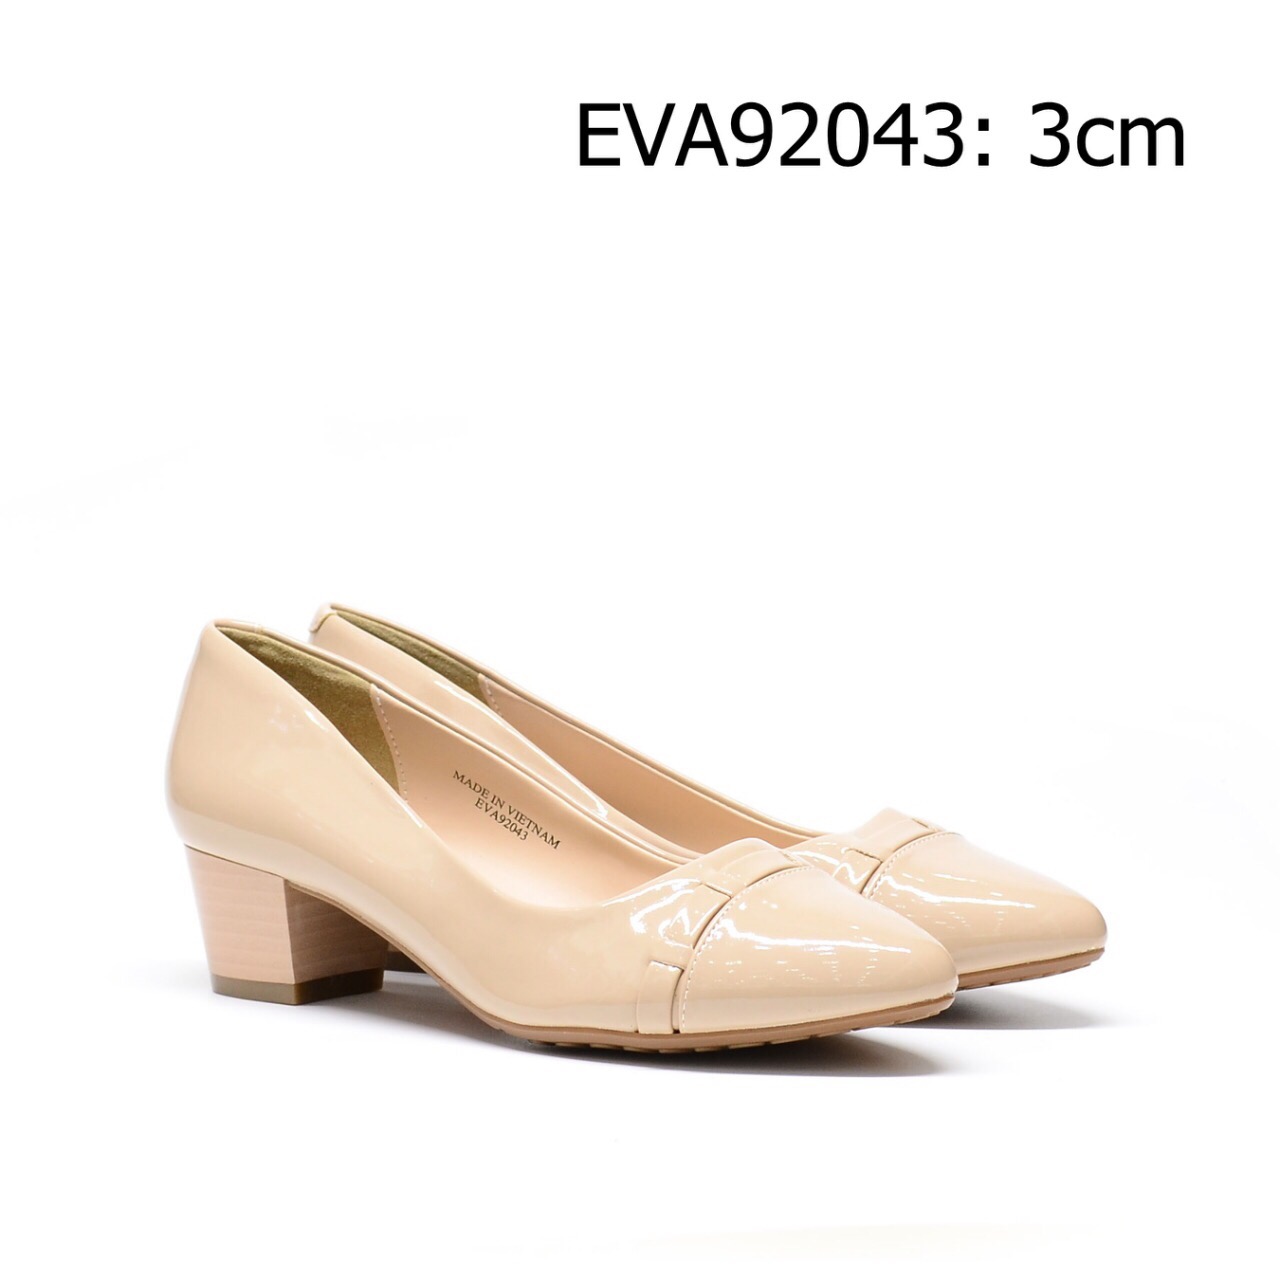 Giày công sở EVA92043 thiết kế đế vuông cao 3cm, da bóng quý phái